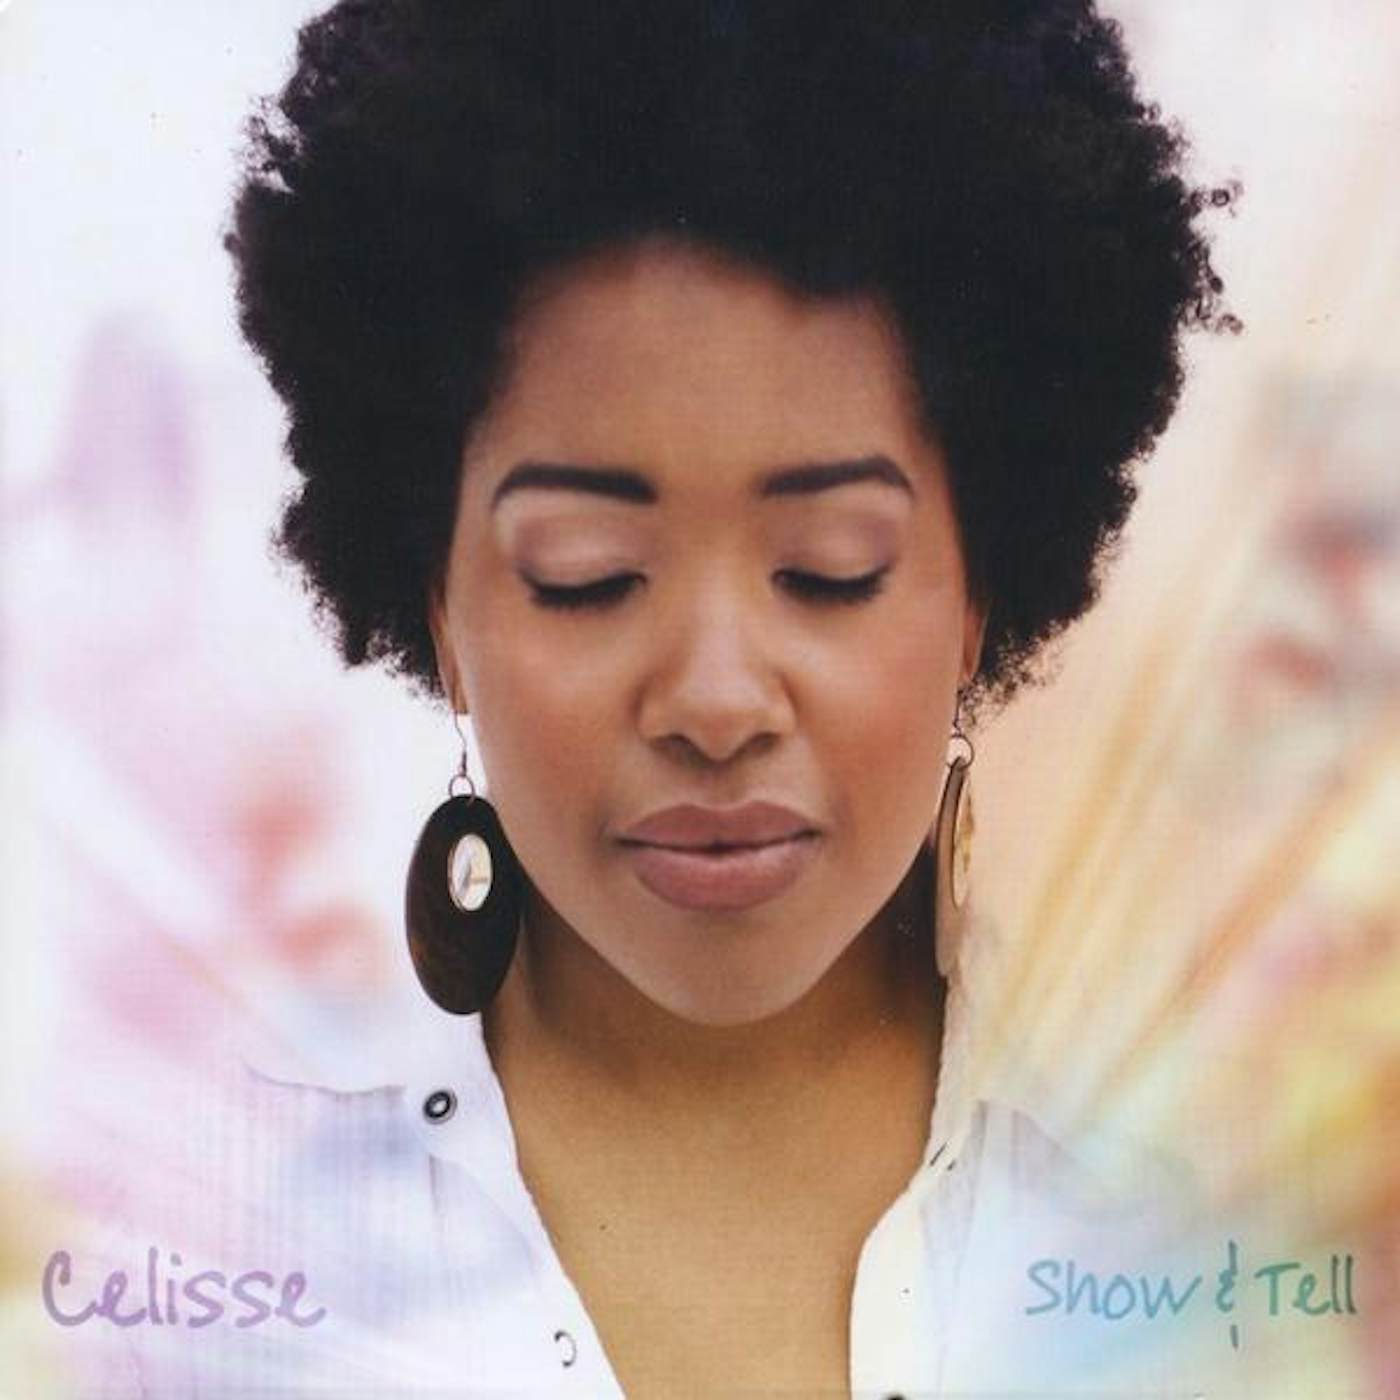 Celisse Henderson SHOW & TELL CD